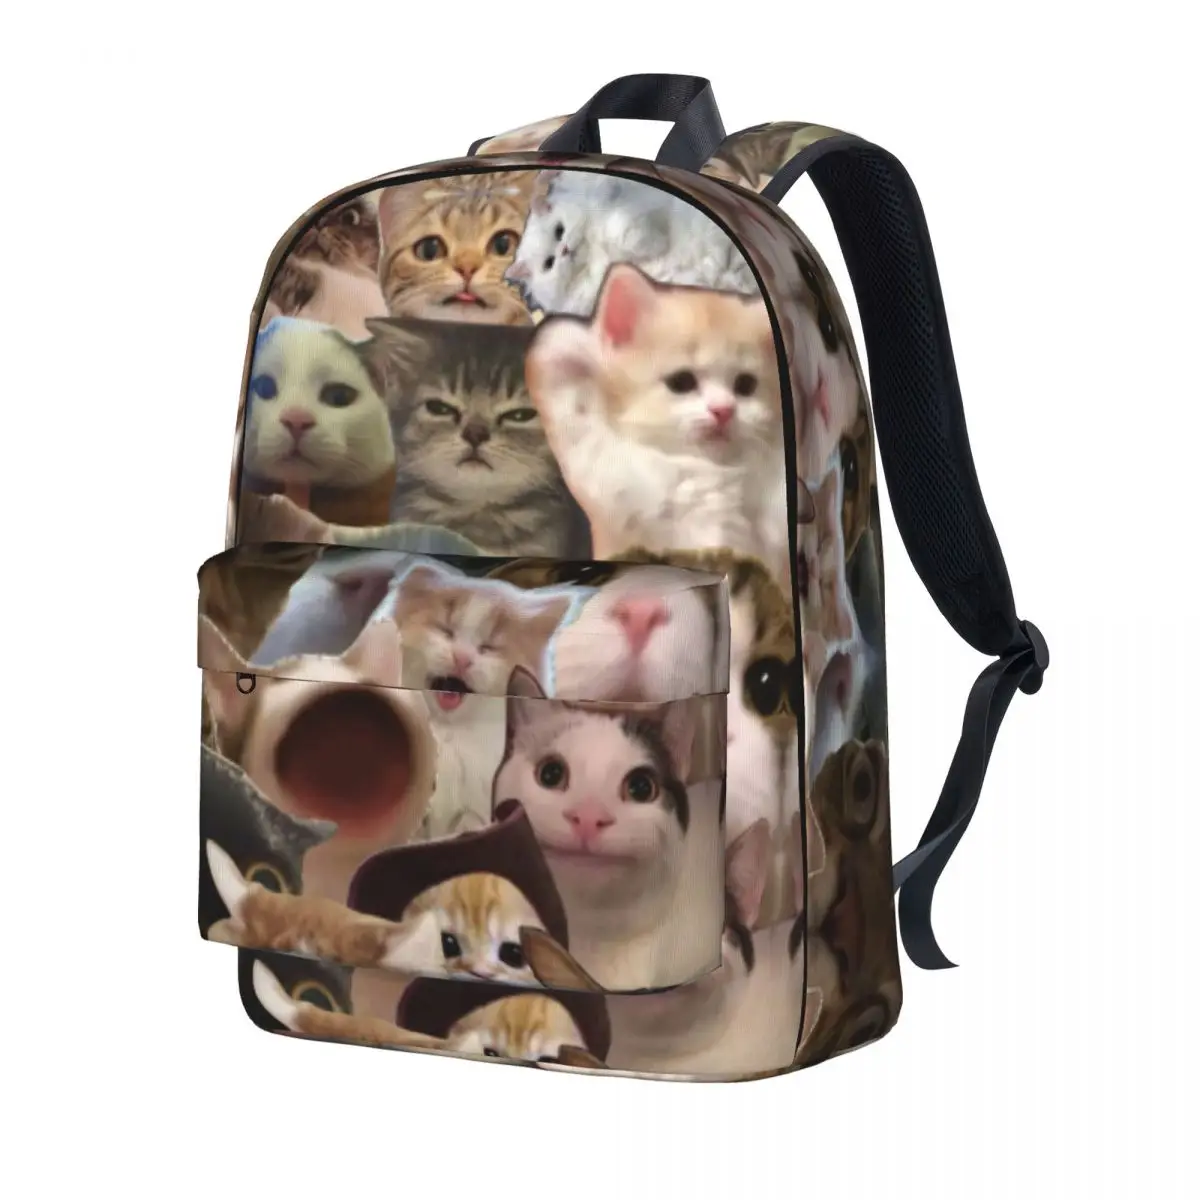 

Рюкзак с милыми животными, кошками, забавные женские рюкзаки из полиэстера для пеших прогулок, повседневные сумки для старшей школы с узором, рюкзак